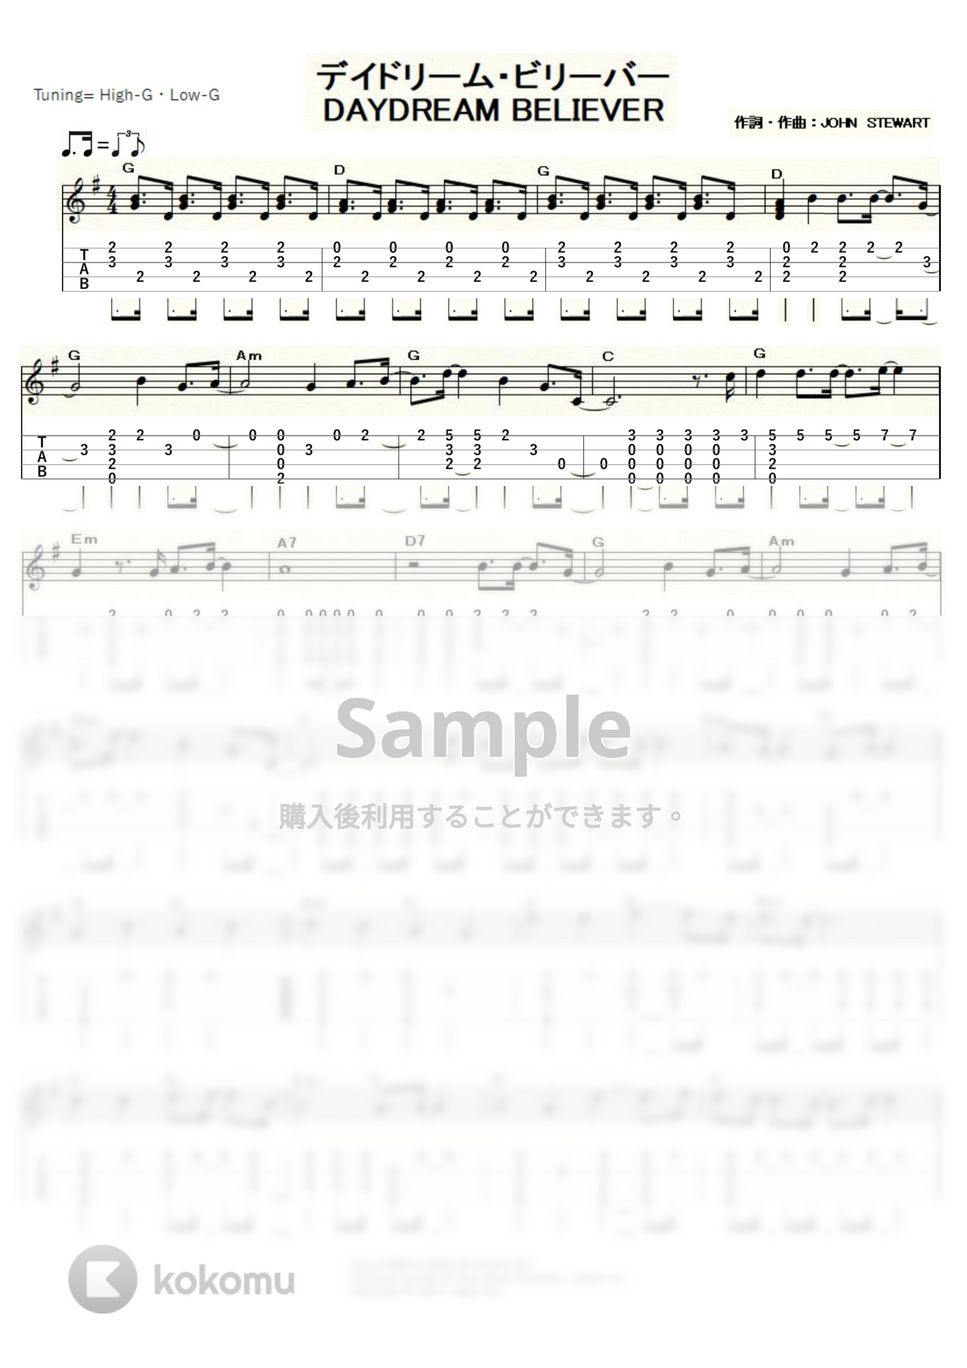 モンキーズ - DAYDREAM BELIEVER (ｳｸﾚﾚｿﾛ / High-G・Low-G / 中級) by ukulelepapa